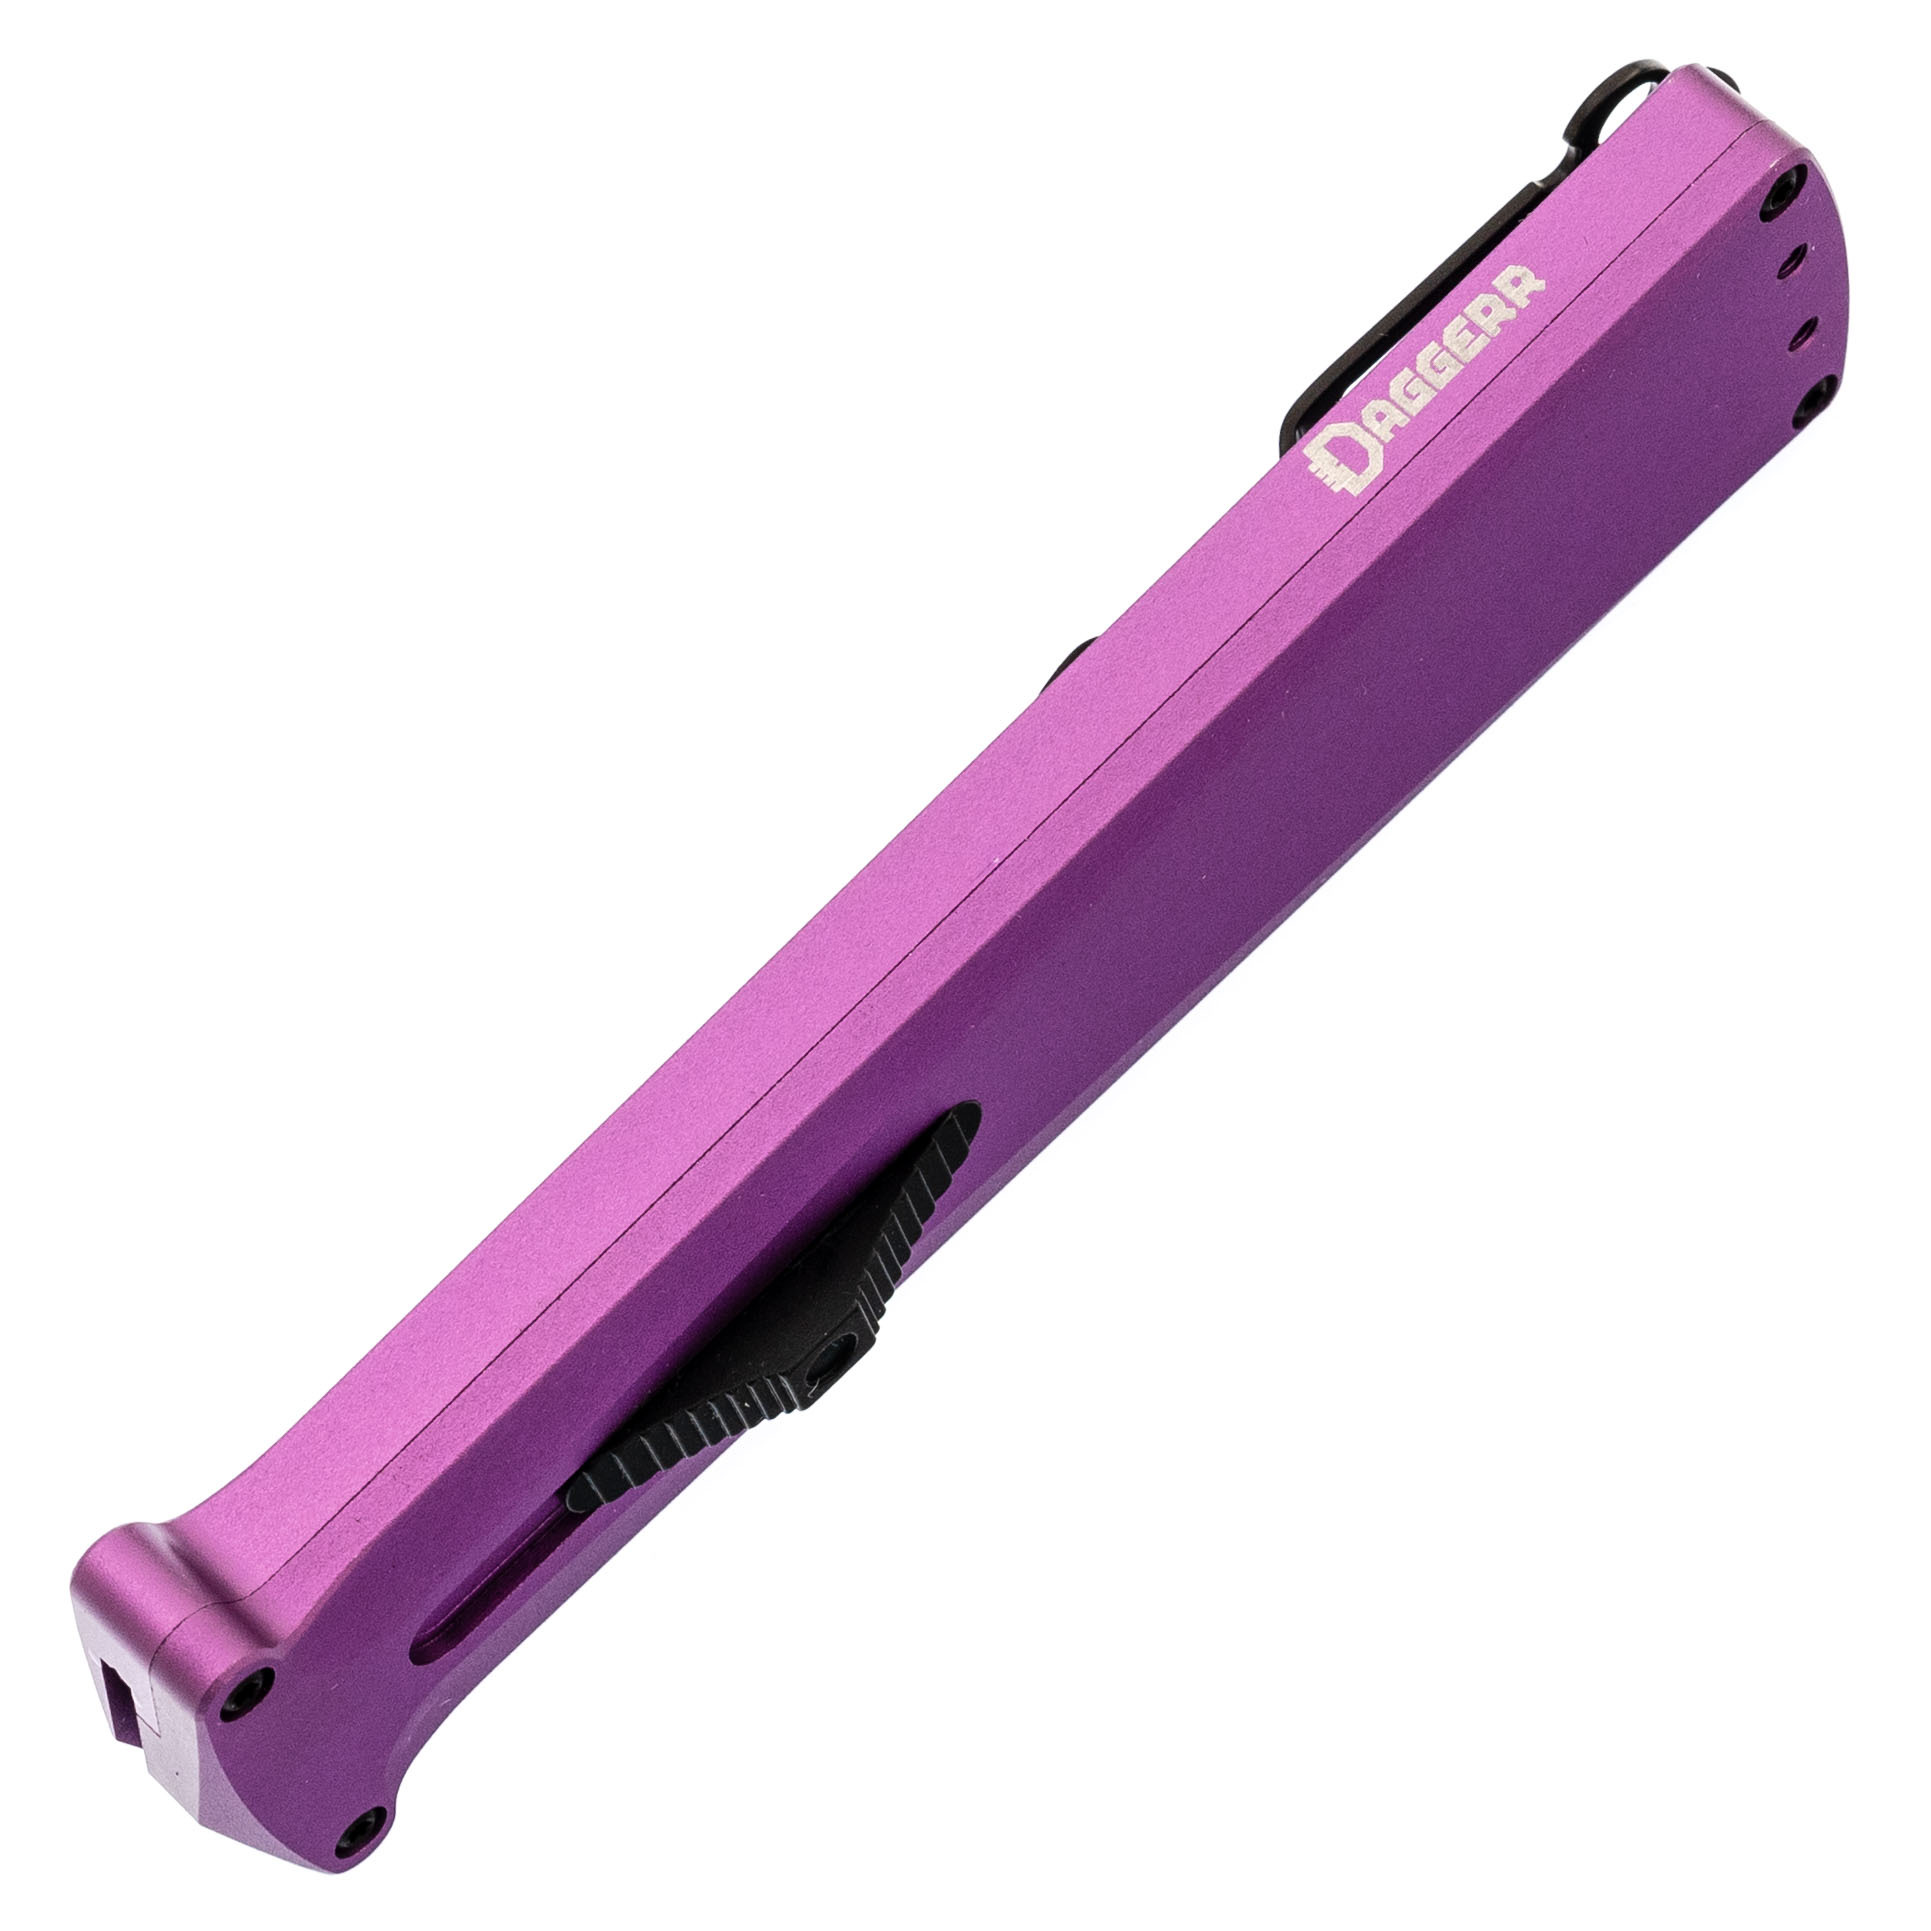 Автоматический нож Daggerr Кощей Slim Purple, сталь D2, рукоять алюминий - фото 5